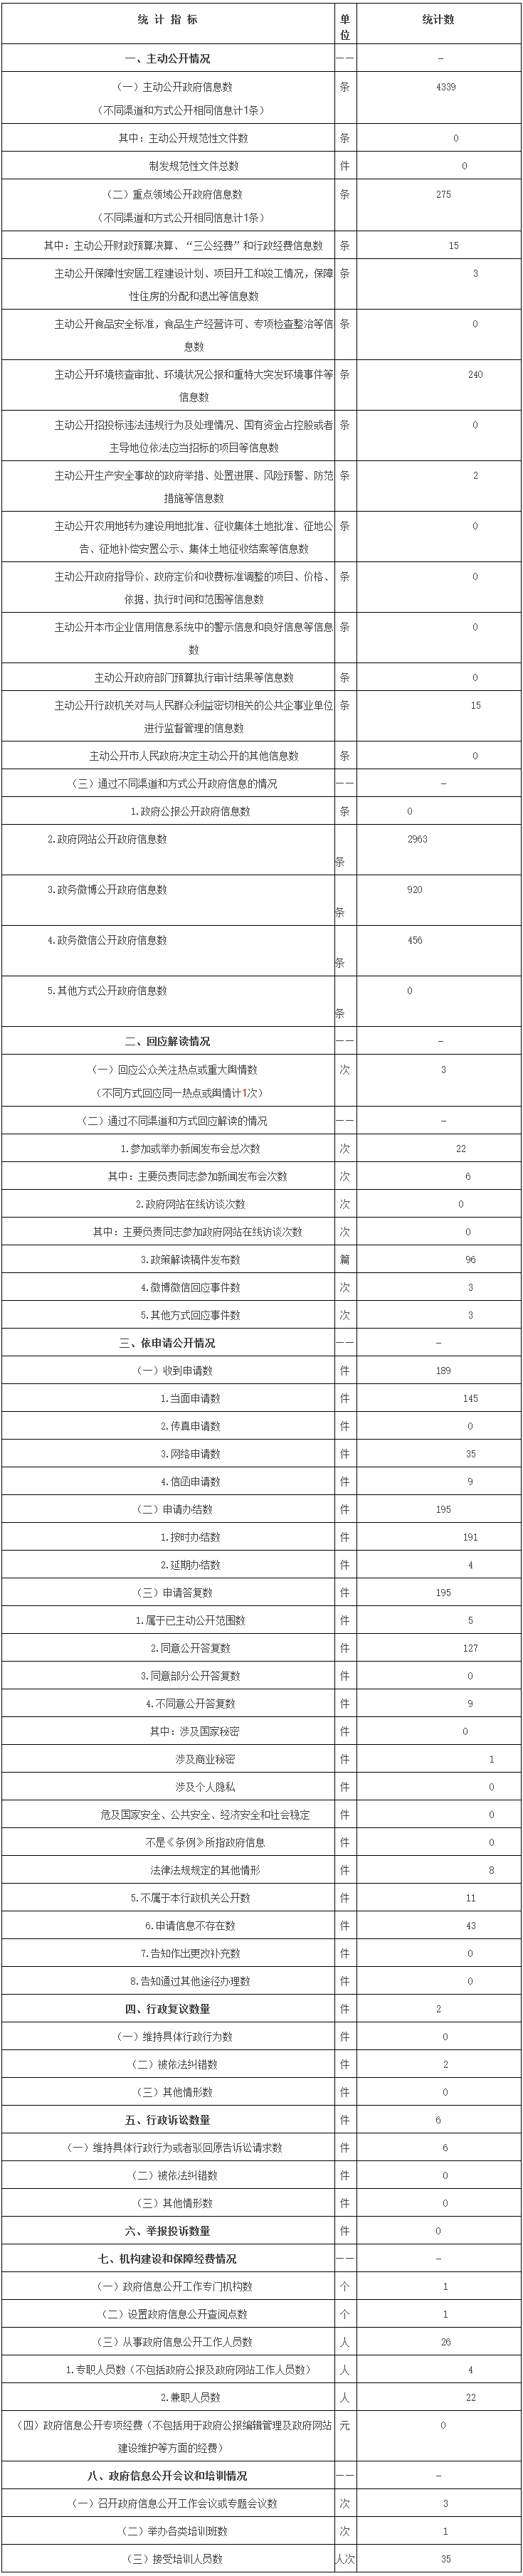 北京經濟技術開發區管理委員會政府信息公開情況統計表(2017年度)